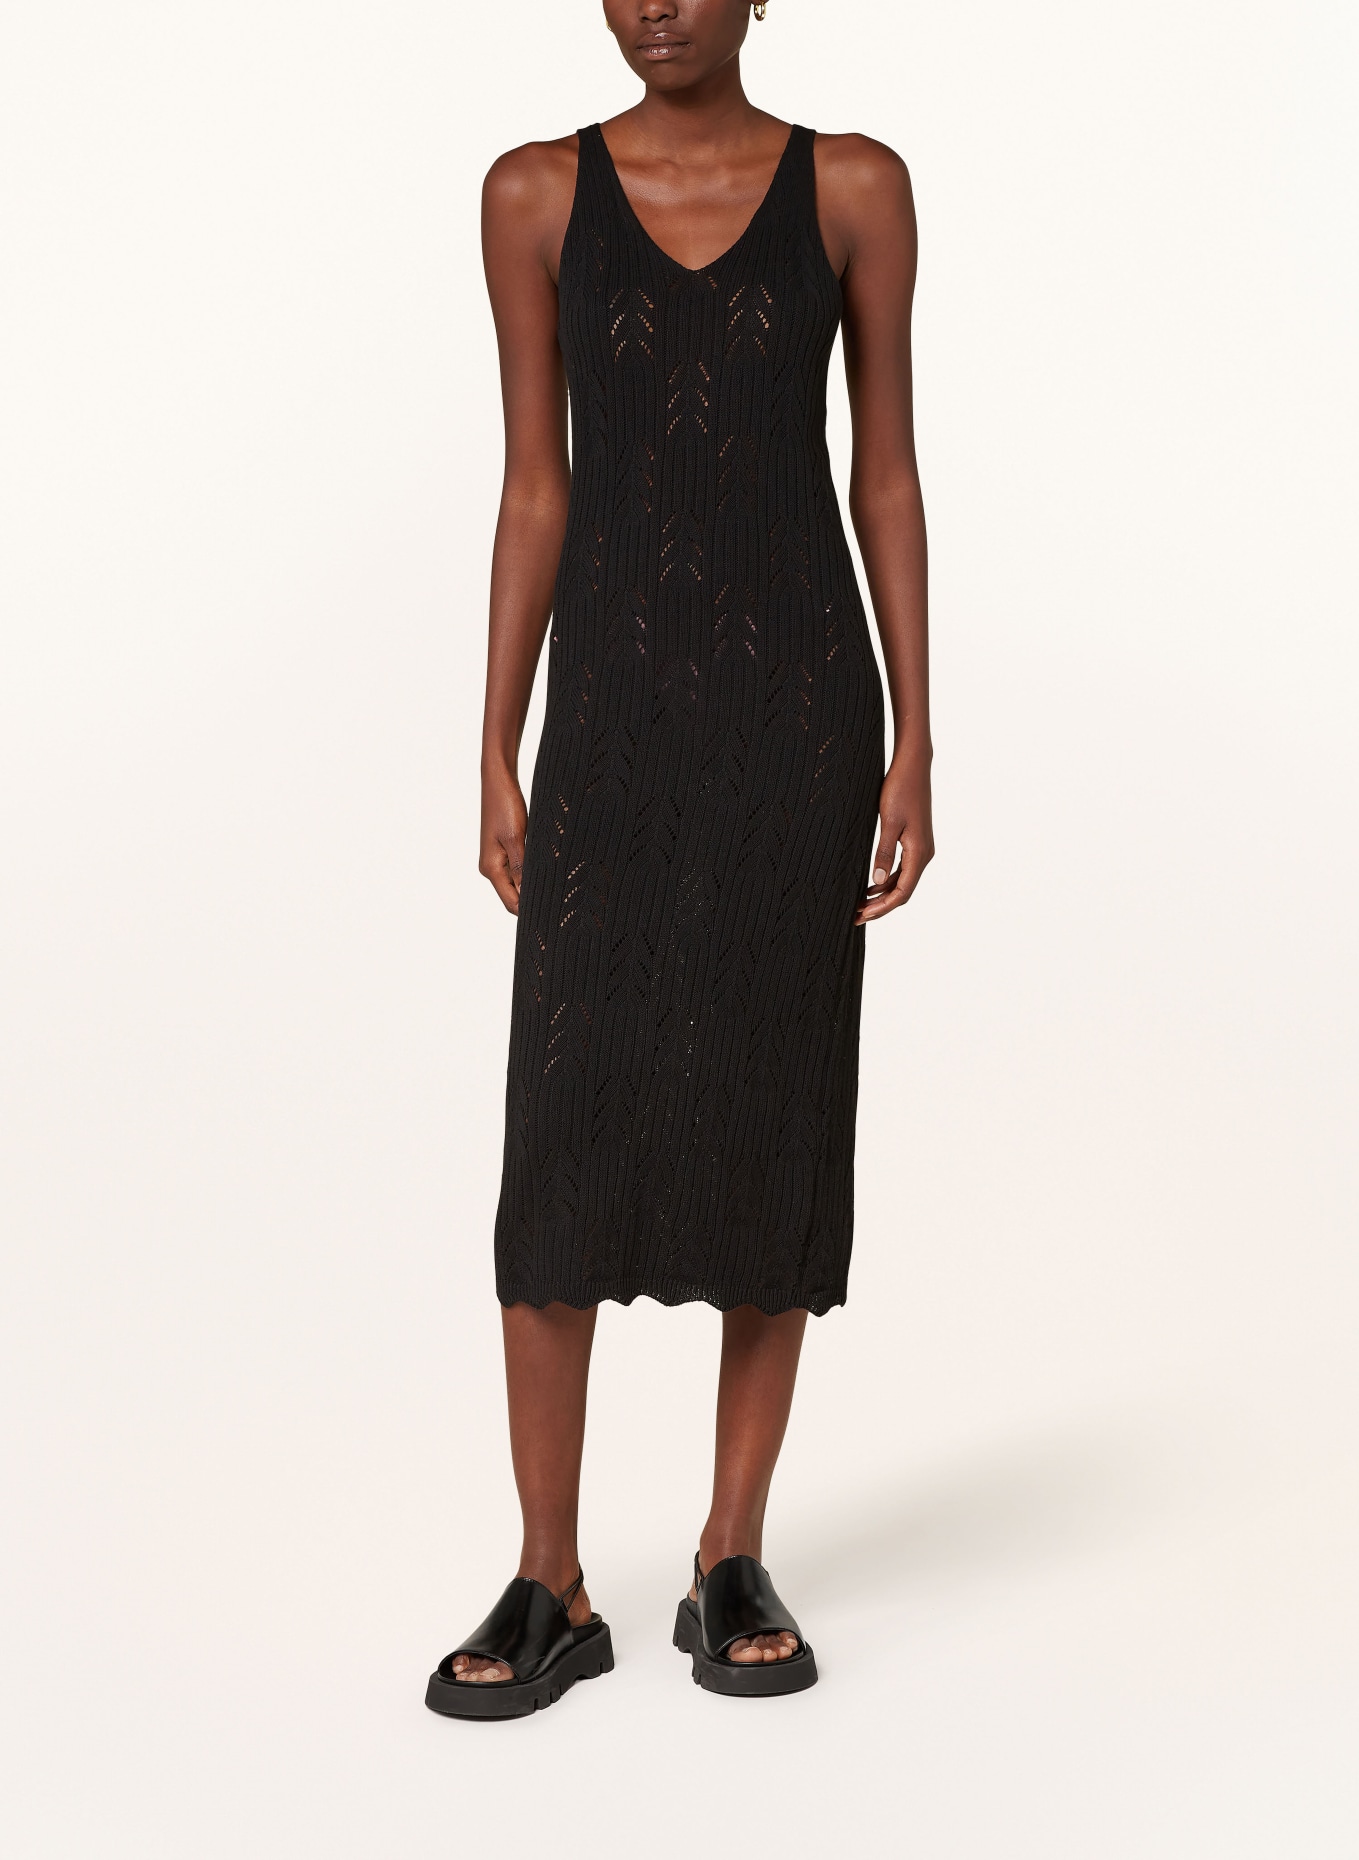 ONLY Knit dress, Color: BLACK (Image 2)